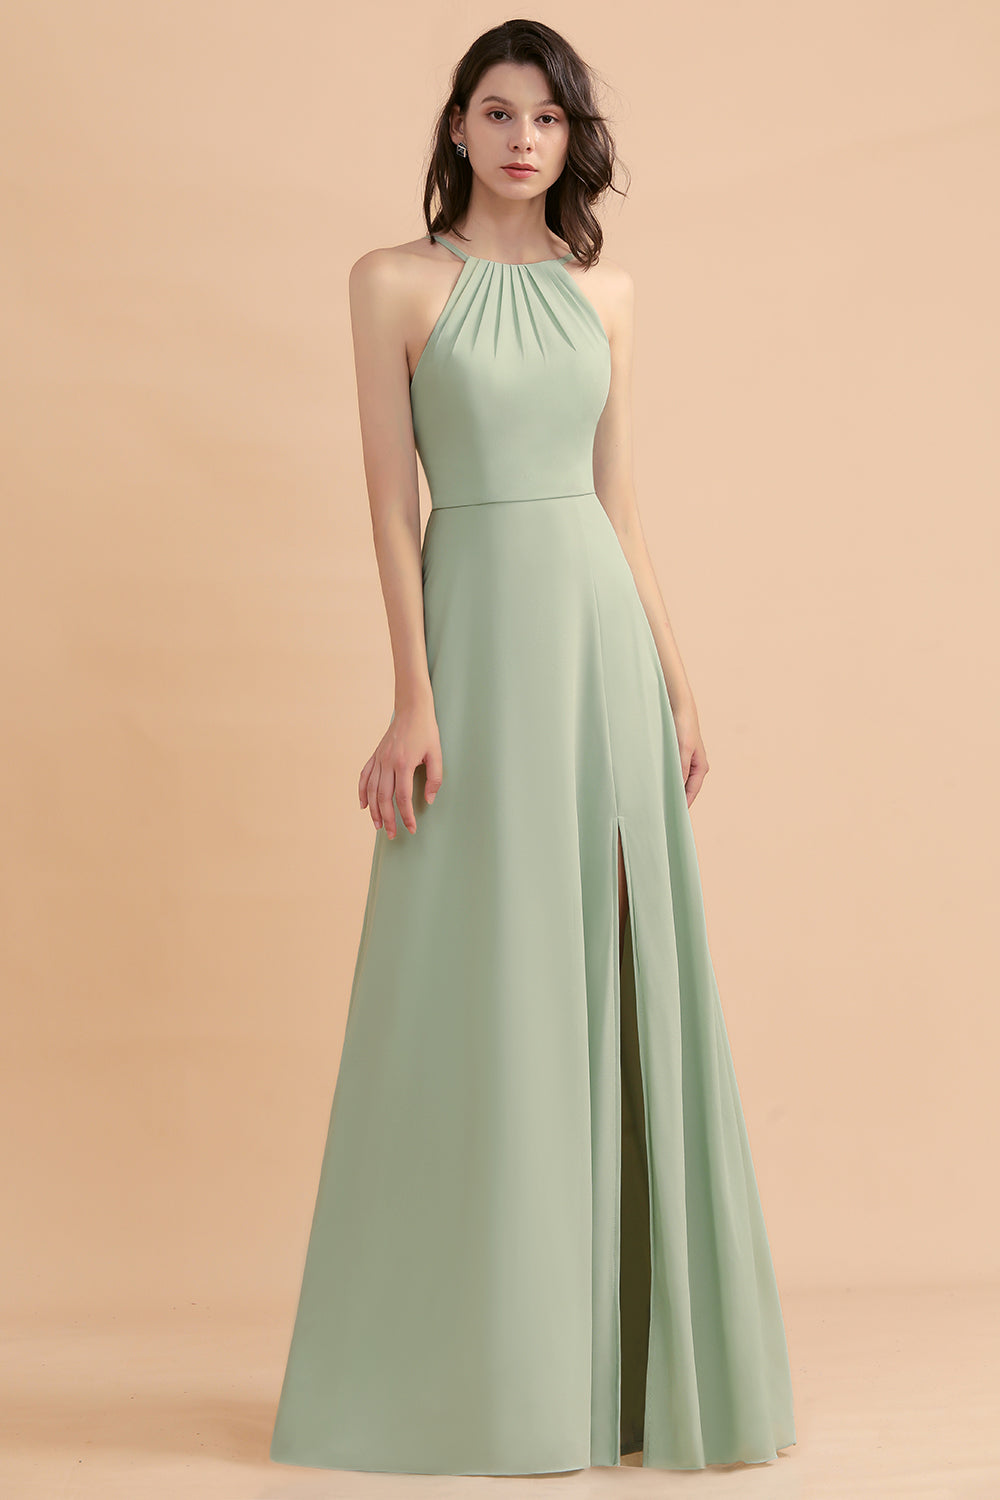 Stylish Jewel Sleeveless Dusty Sage Chiffon Bridesmaid Dress with Ruffles-27dress